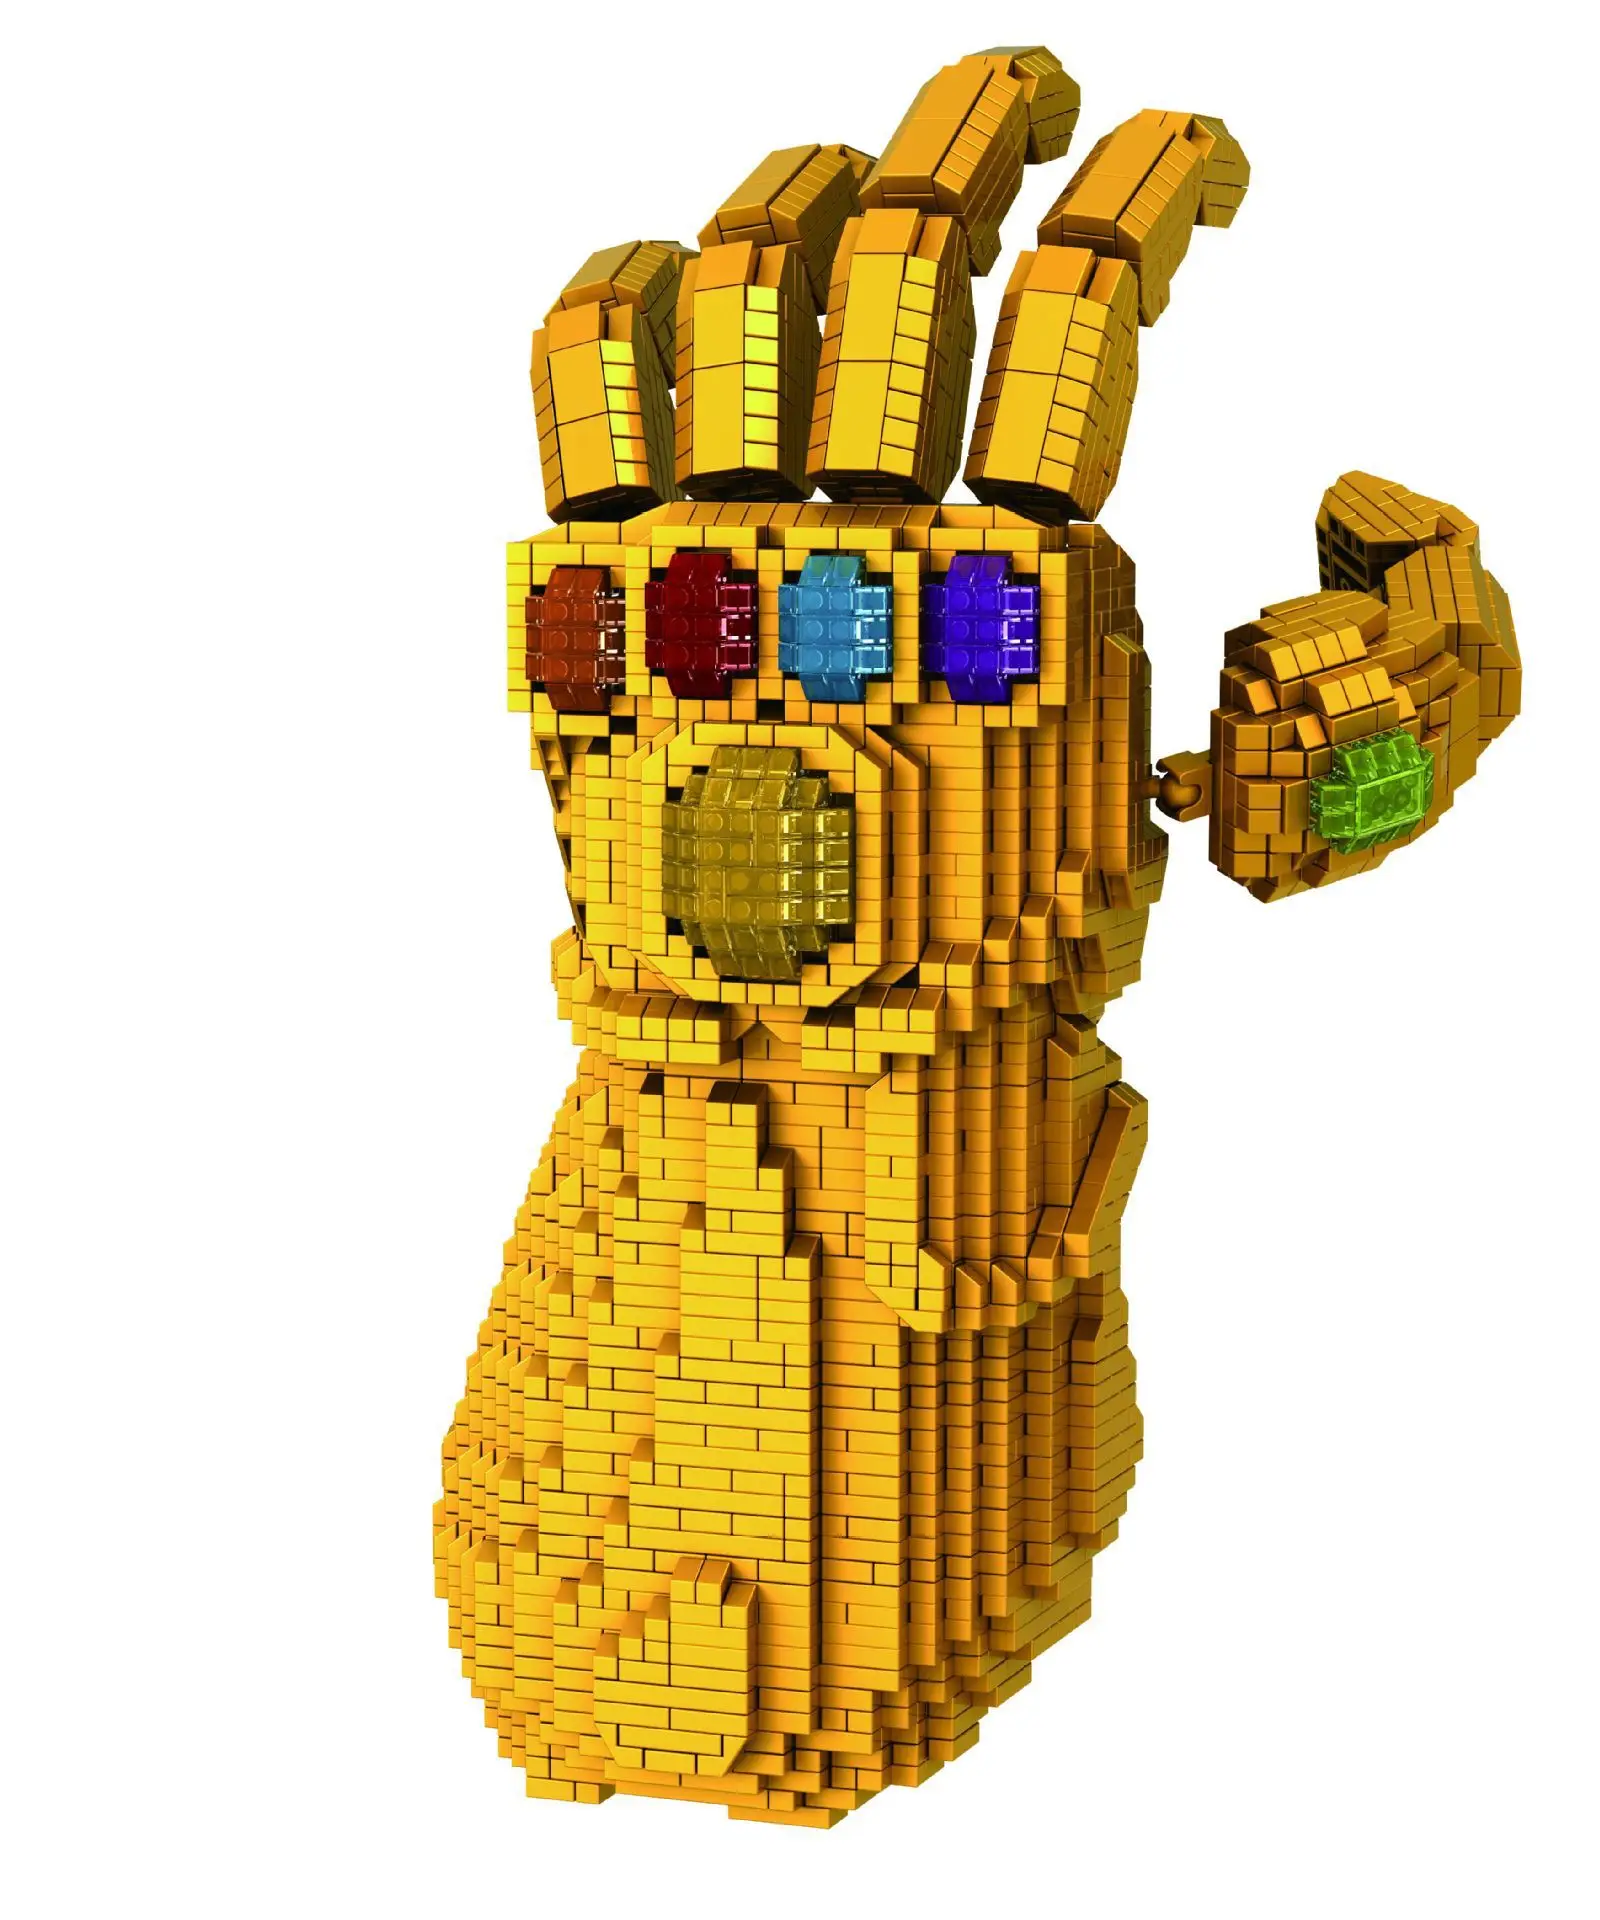 4100 шт. Marvel Мстители 4 мелкие частицы Конструктор из строительных блоков игрушки-Месть Альянс Marvel перчатки Таноса подарки